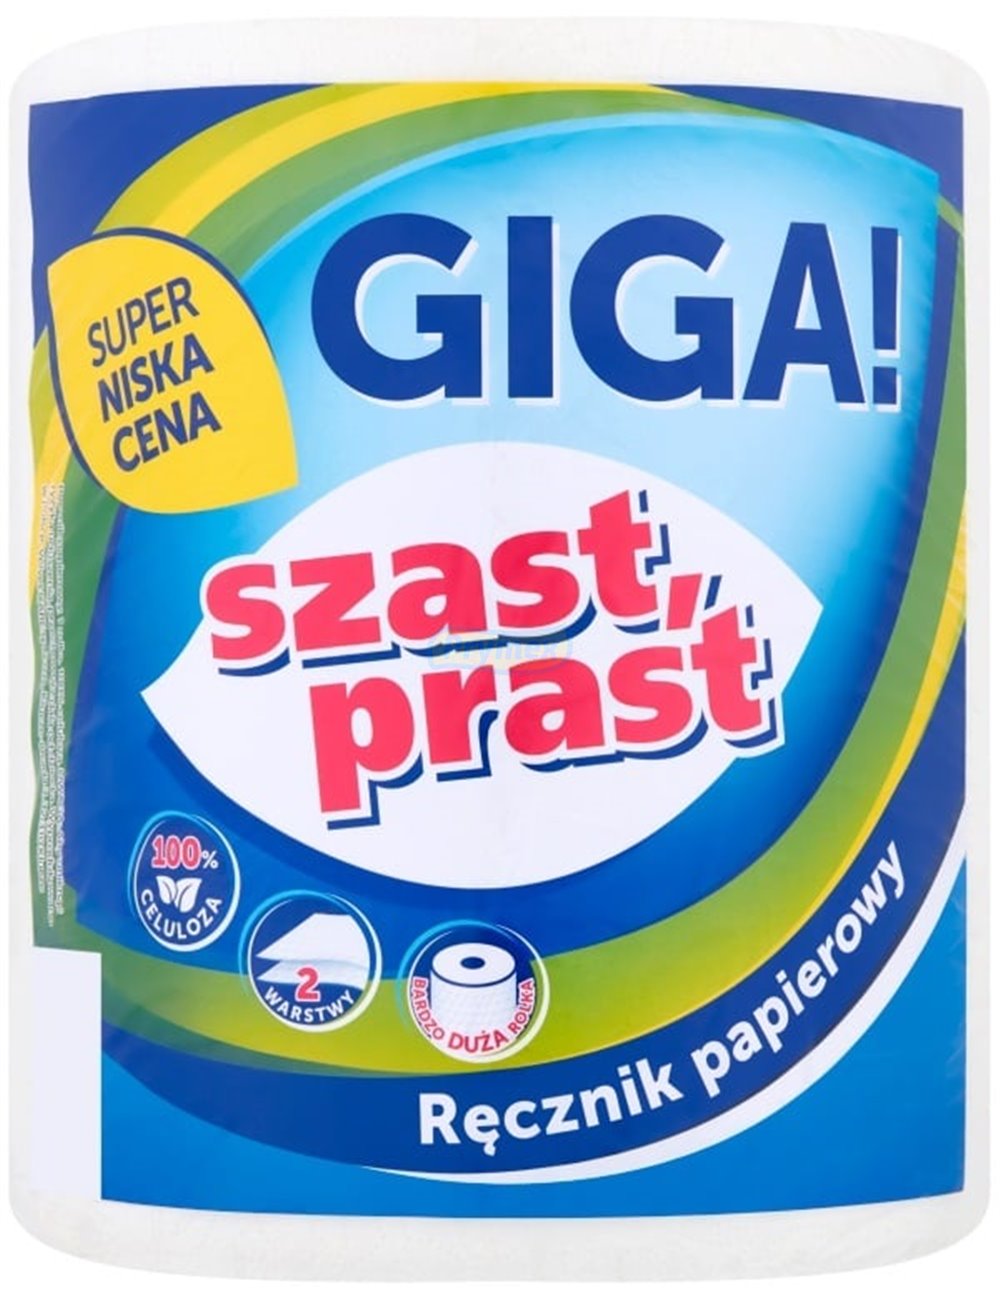 Ręcznik Papierowy 2-warstwowy Celuloza Giga Szast Prast (1 rolka)